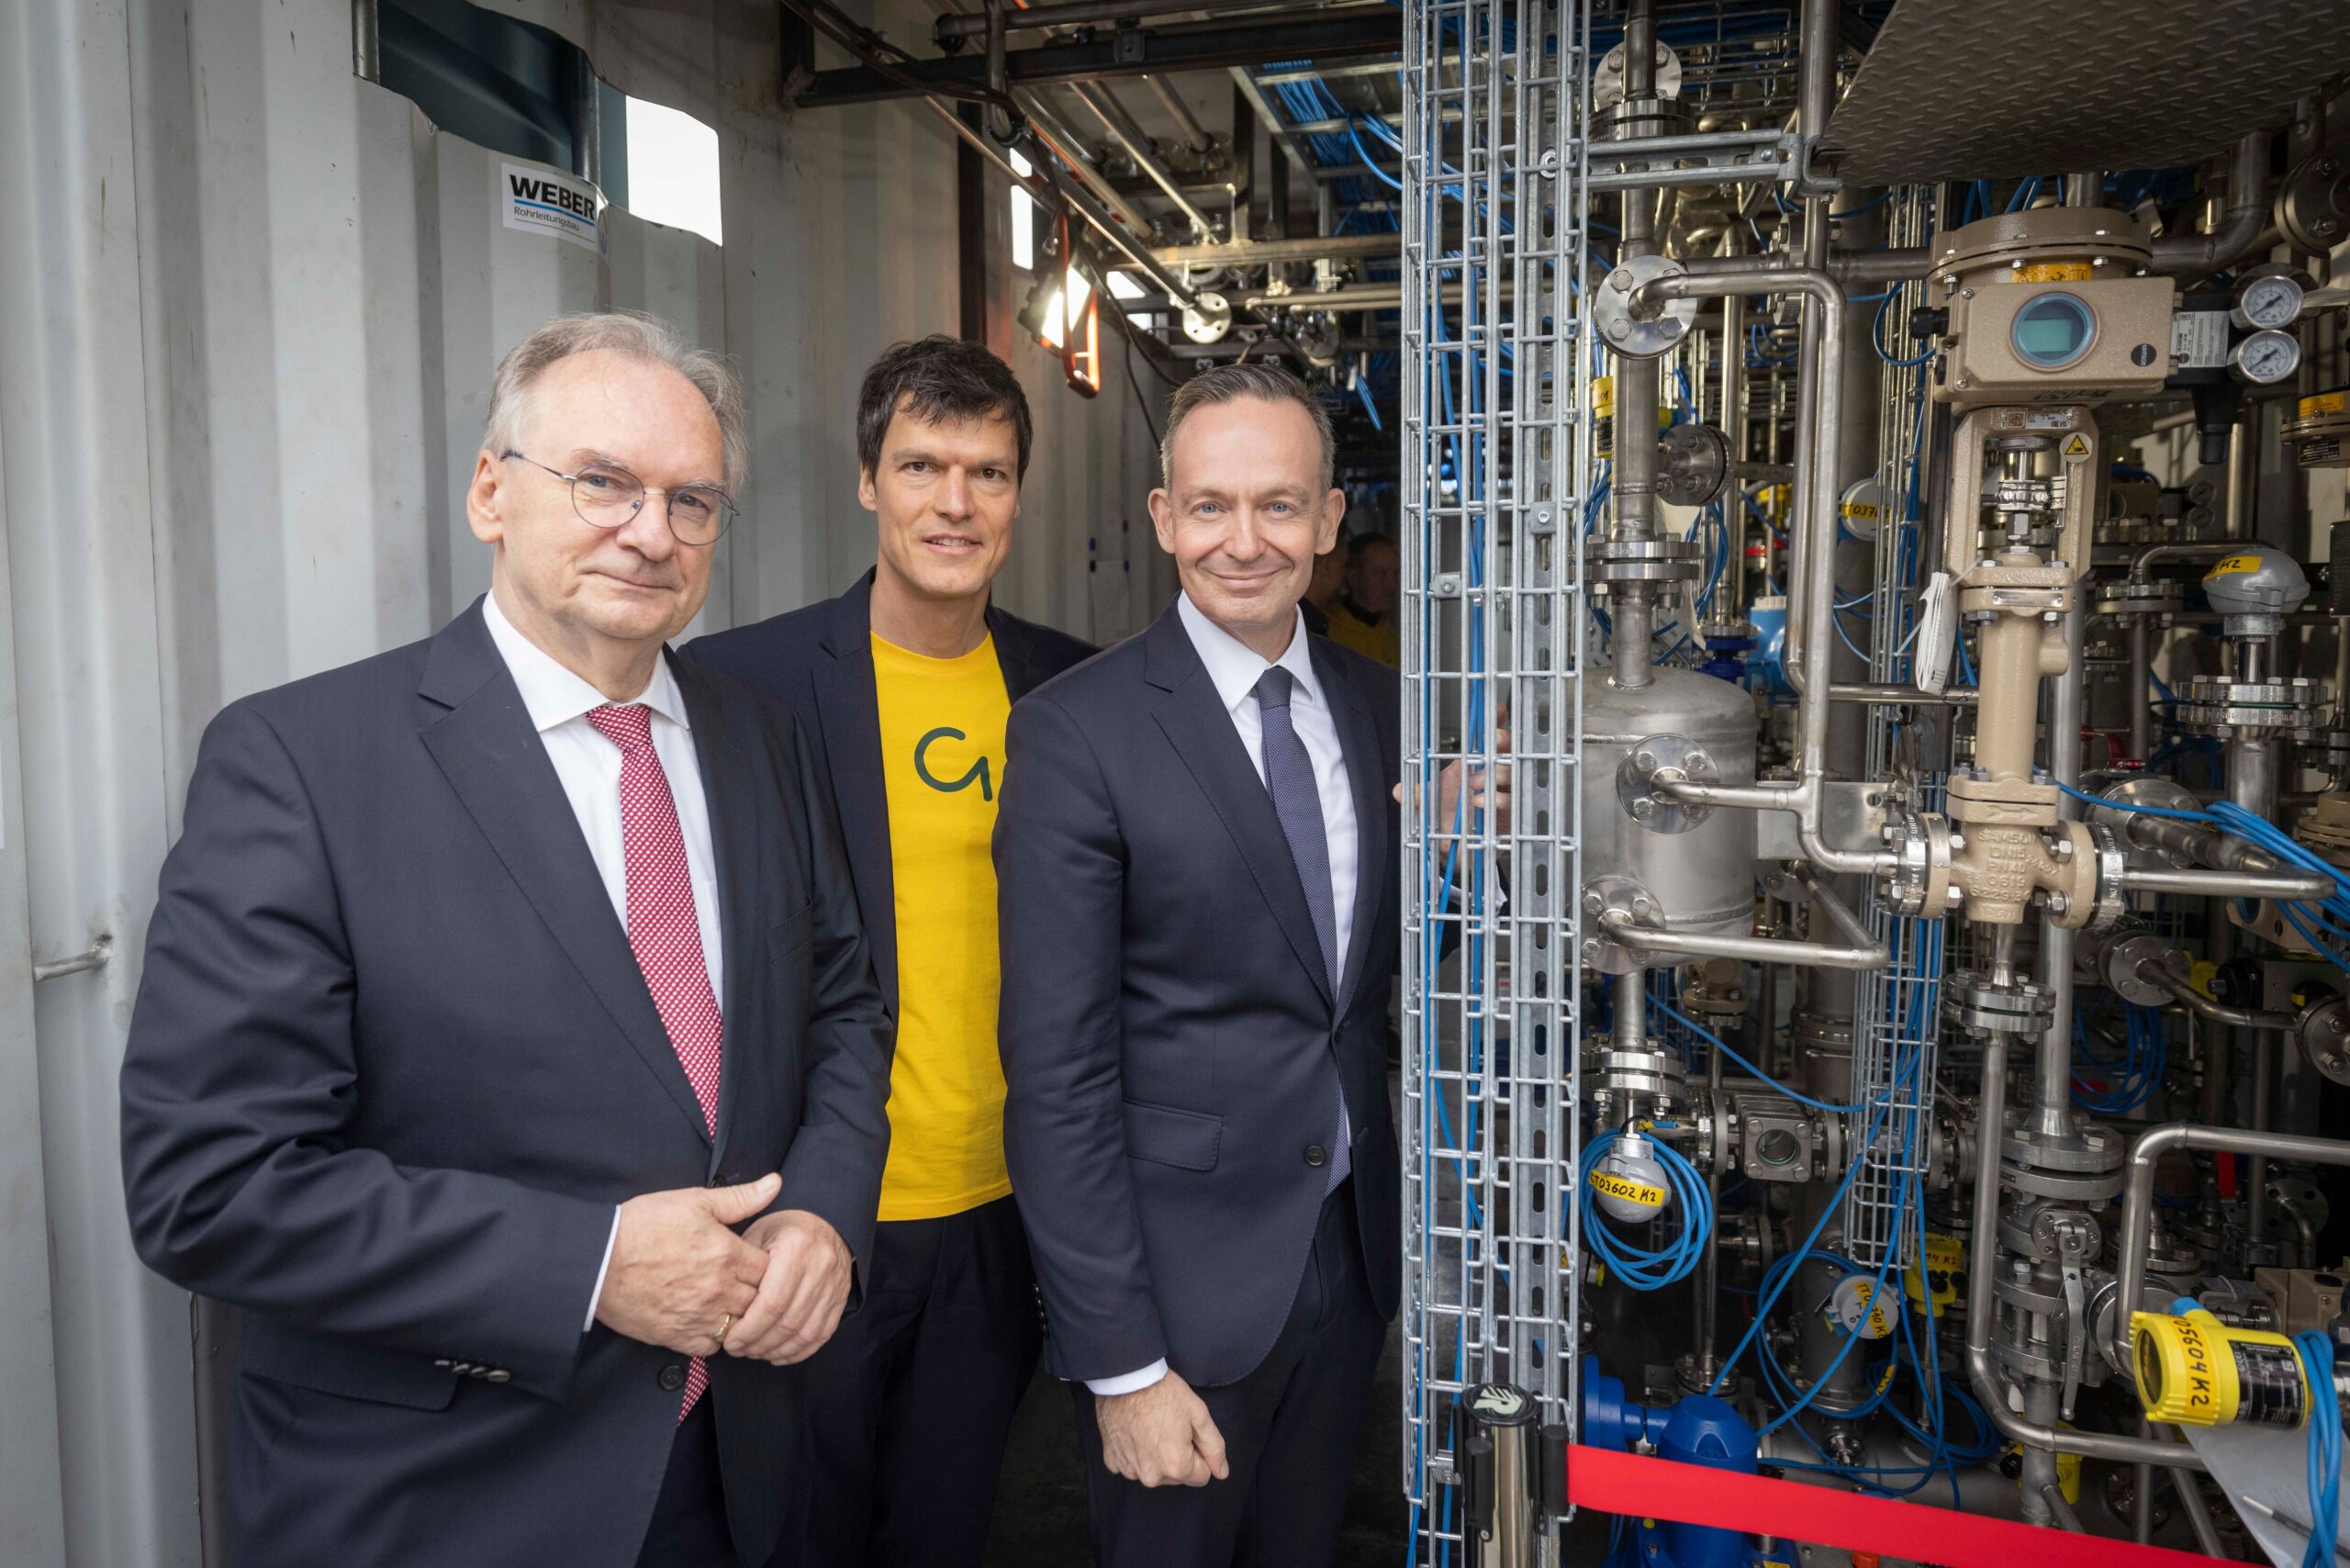 Reiner Haseloff, Peter Braun und Volker Wissing bei der Einweihung der Methanolproduktion in Leuna (© NOW)